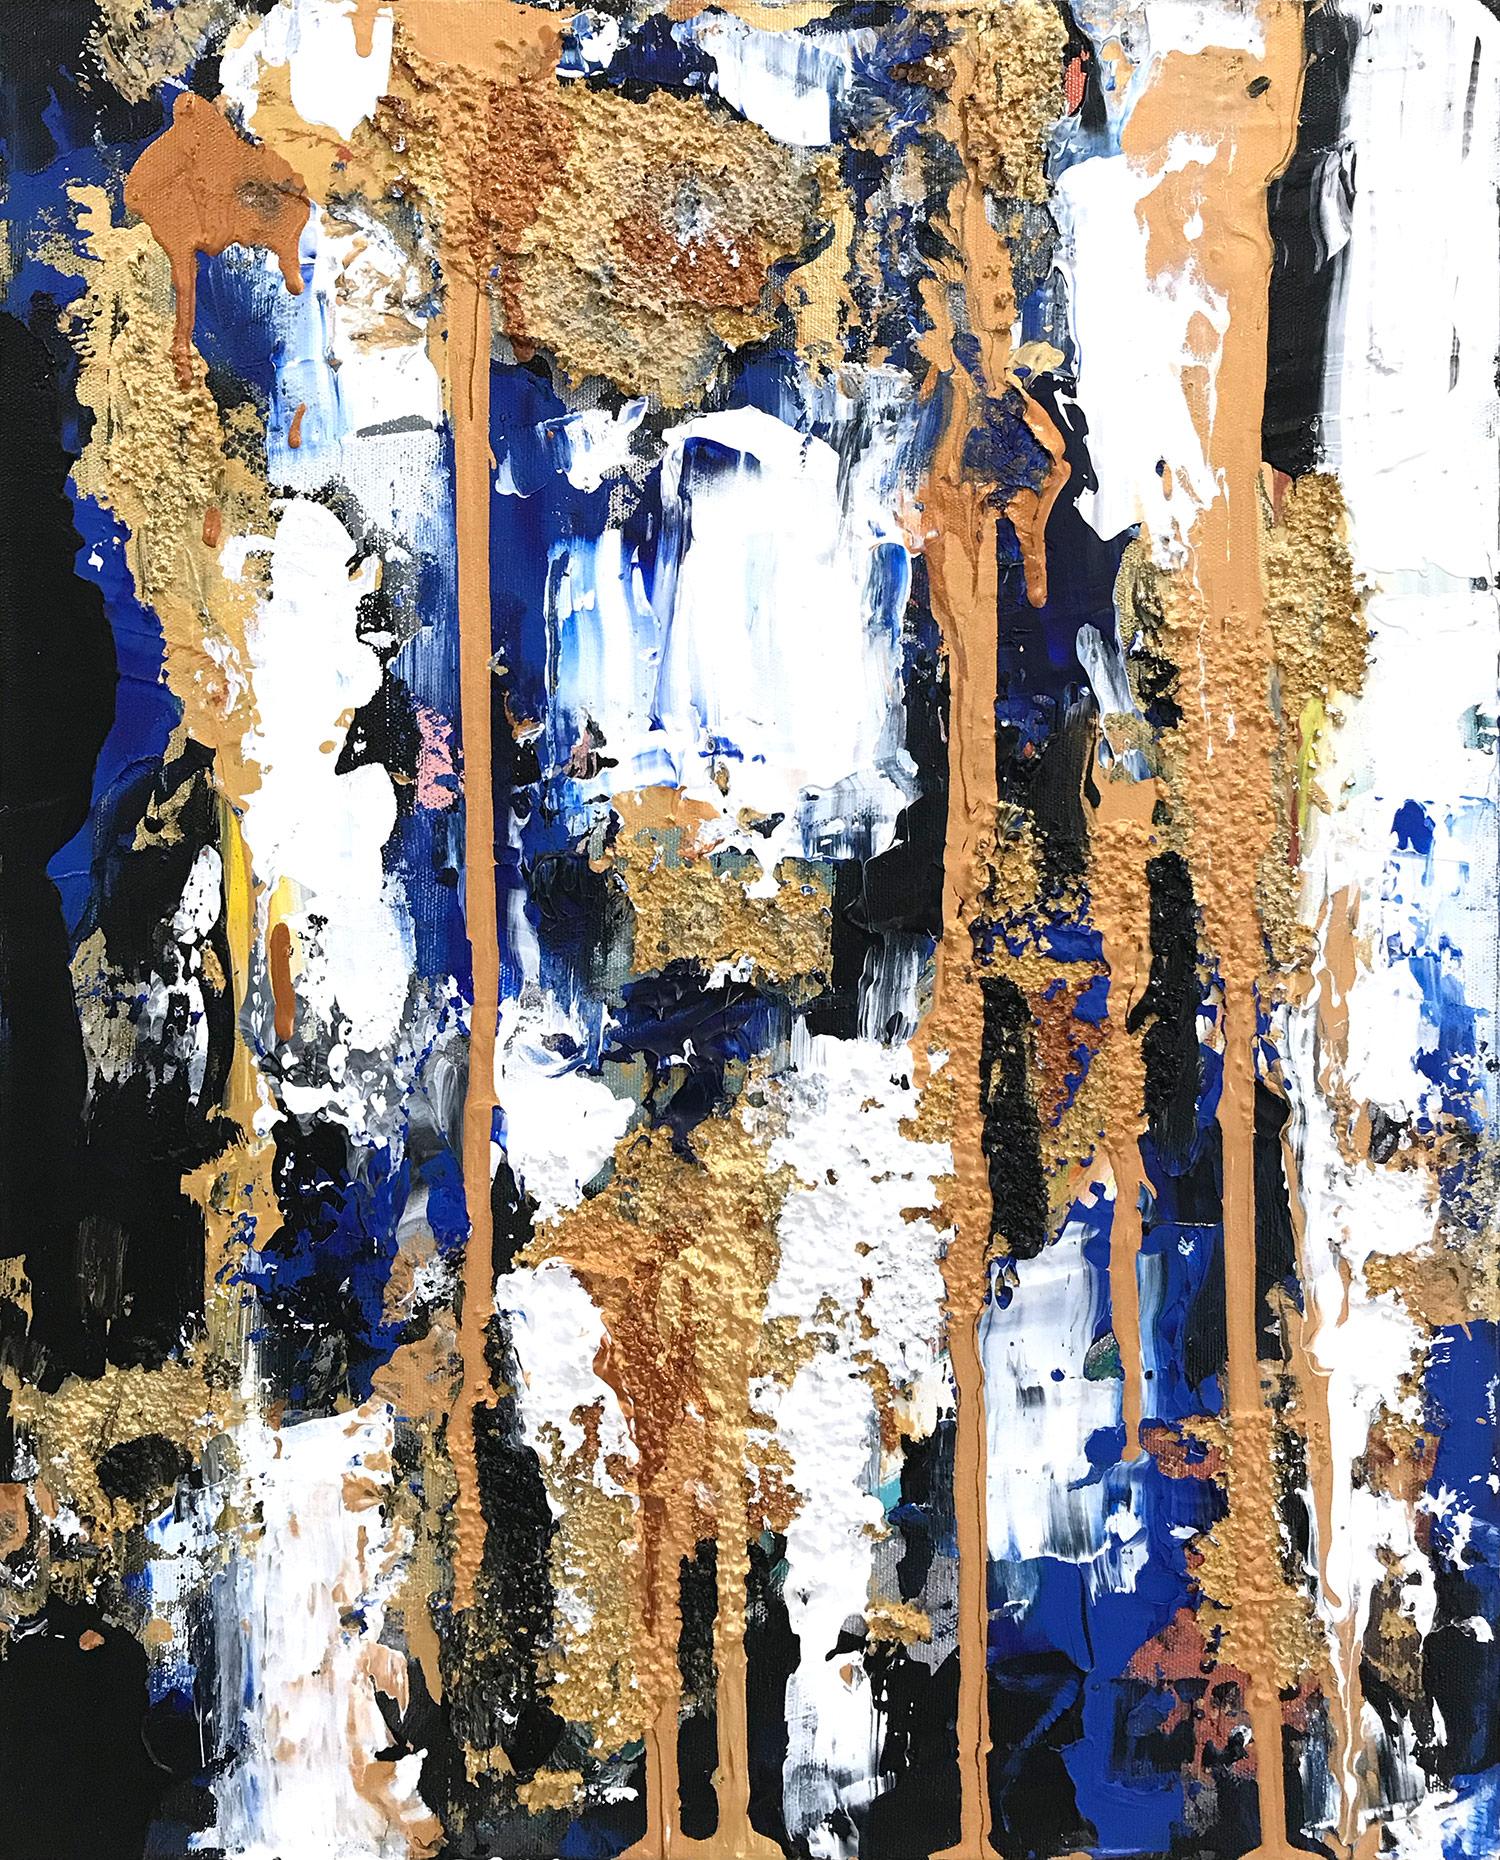 "Beyond Blue" Peinture contemporaine à l'huile et techniques mixtes sur toile